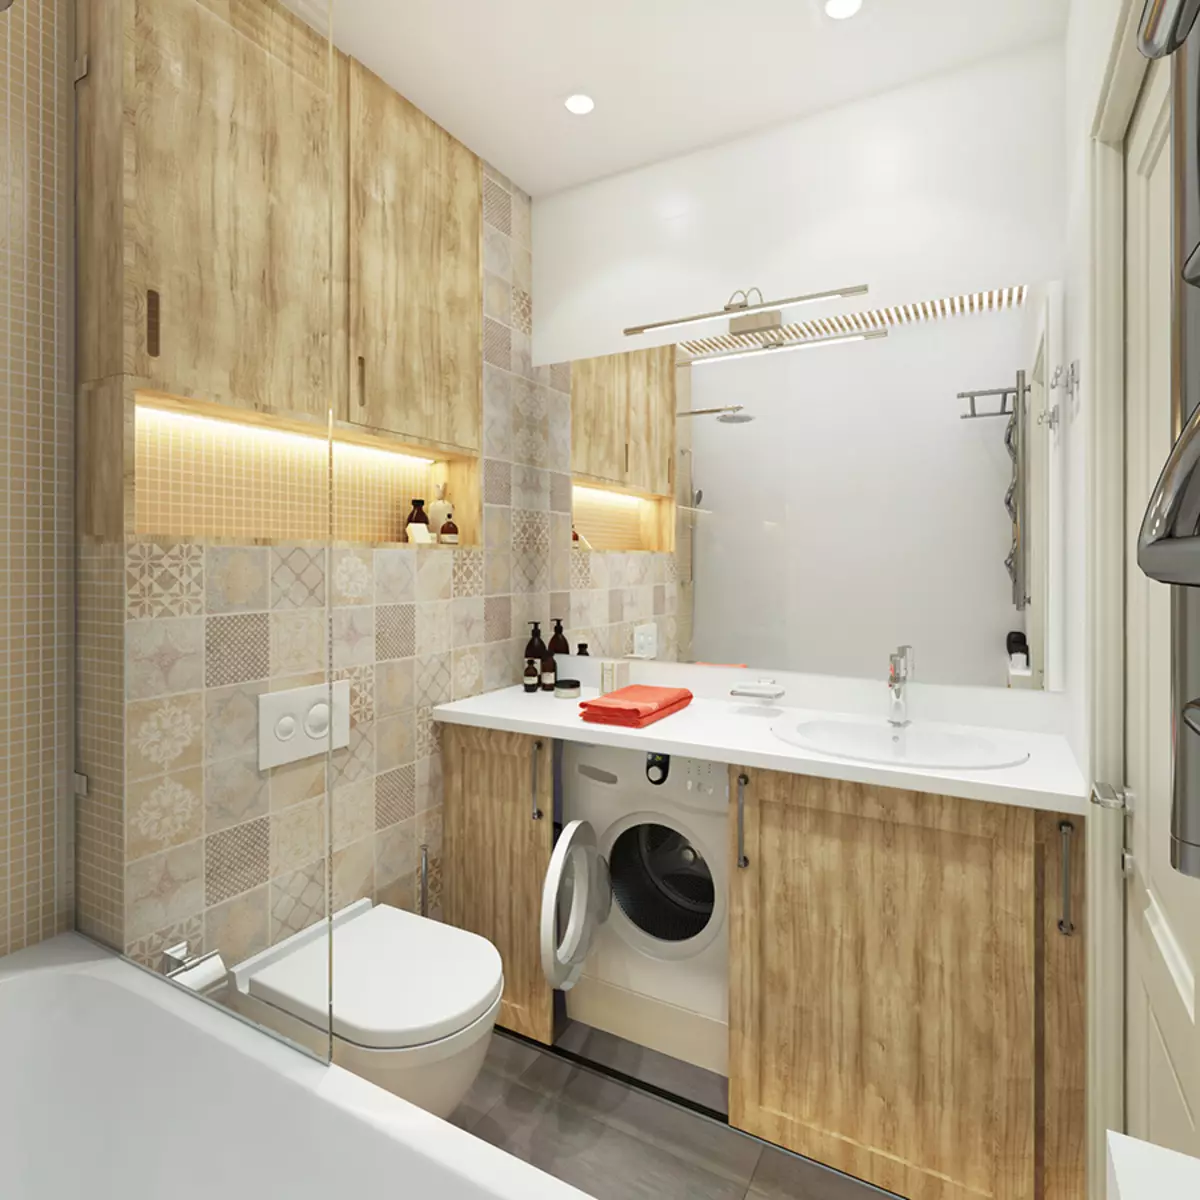 결합 된 욕실 6 평방 미터의 디자인. M (77 사진) : 화장실, 목욕 레이아웃 2 x 3 미터의 인테리어 디자인 10454_4